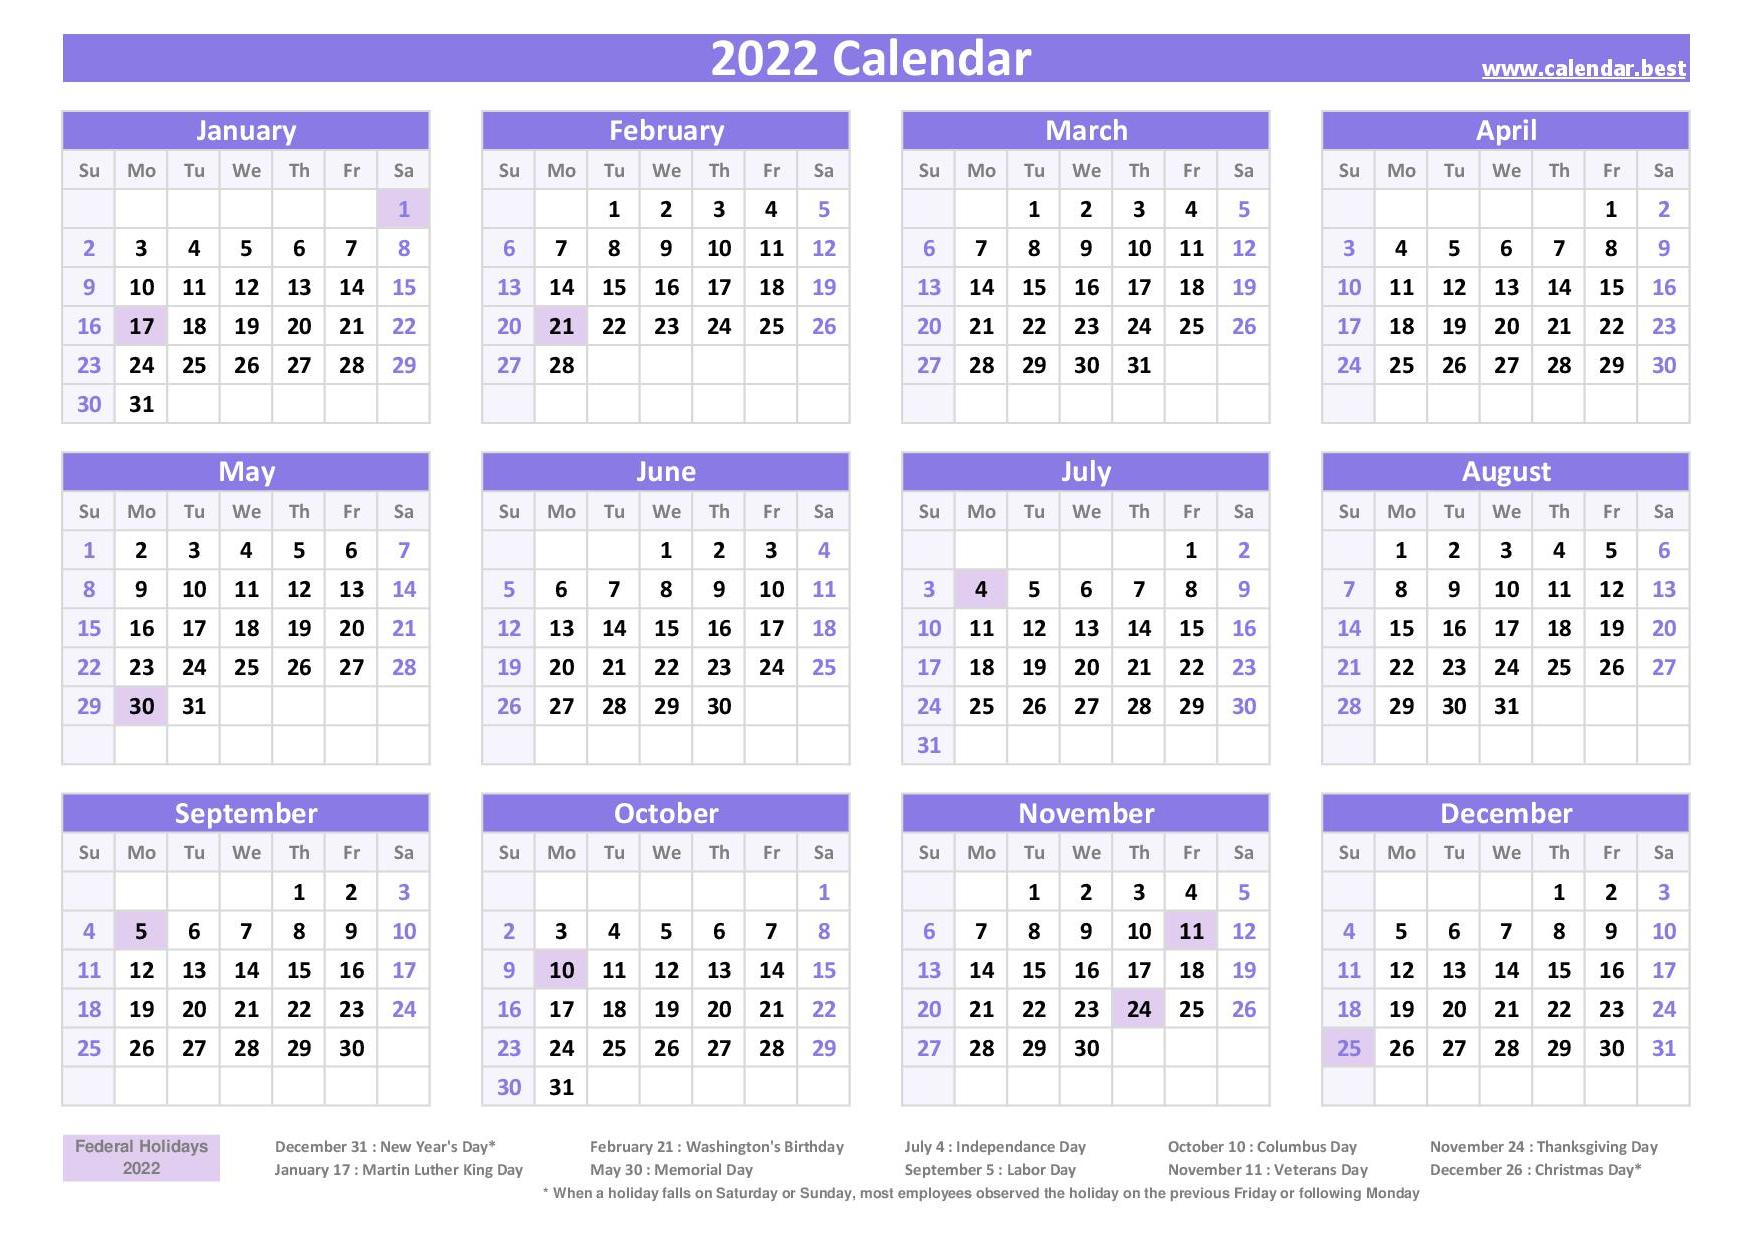 2021 Calendar With Week Numbers Calendar Best Free Printable 2022 Calendar With Week Numbers 